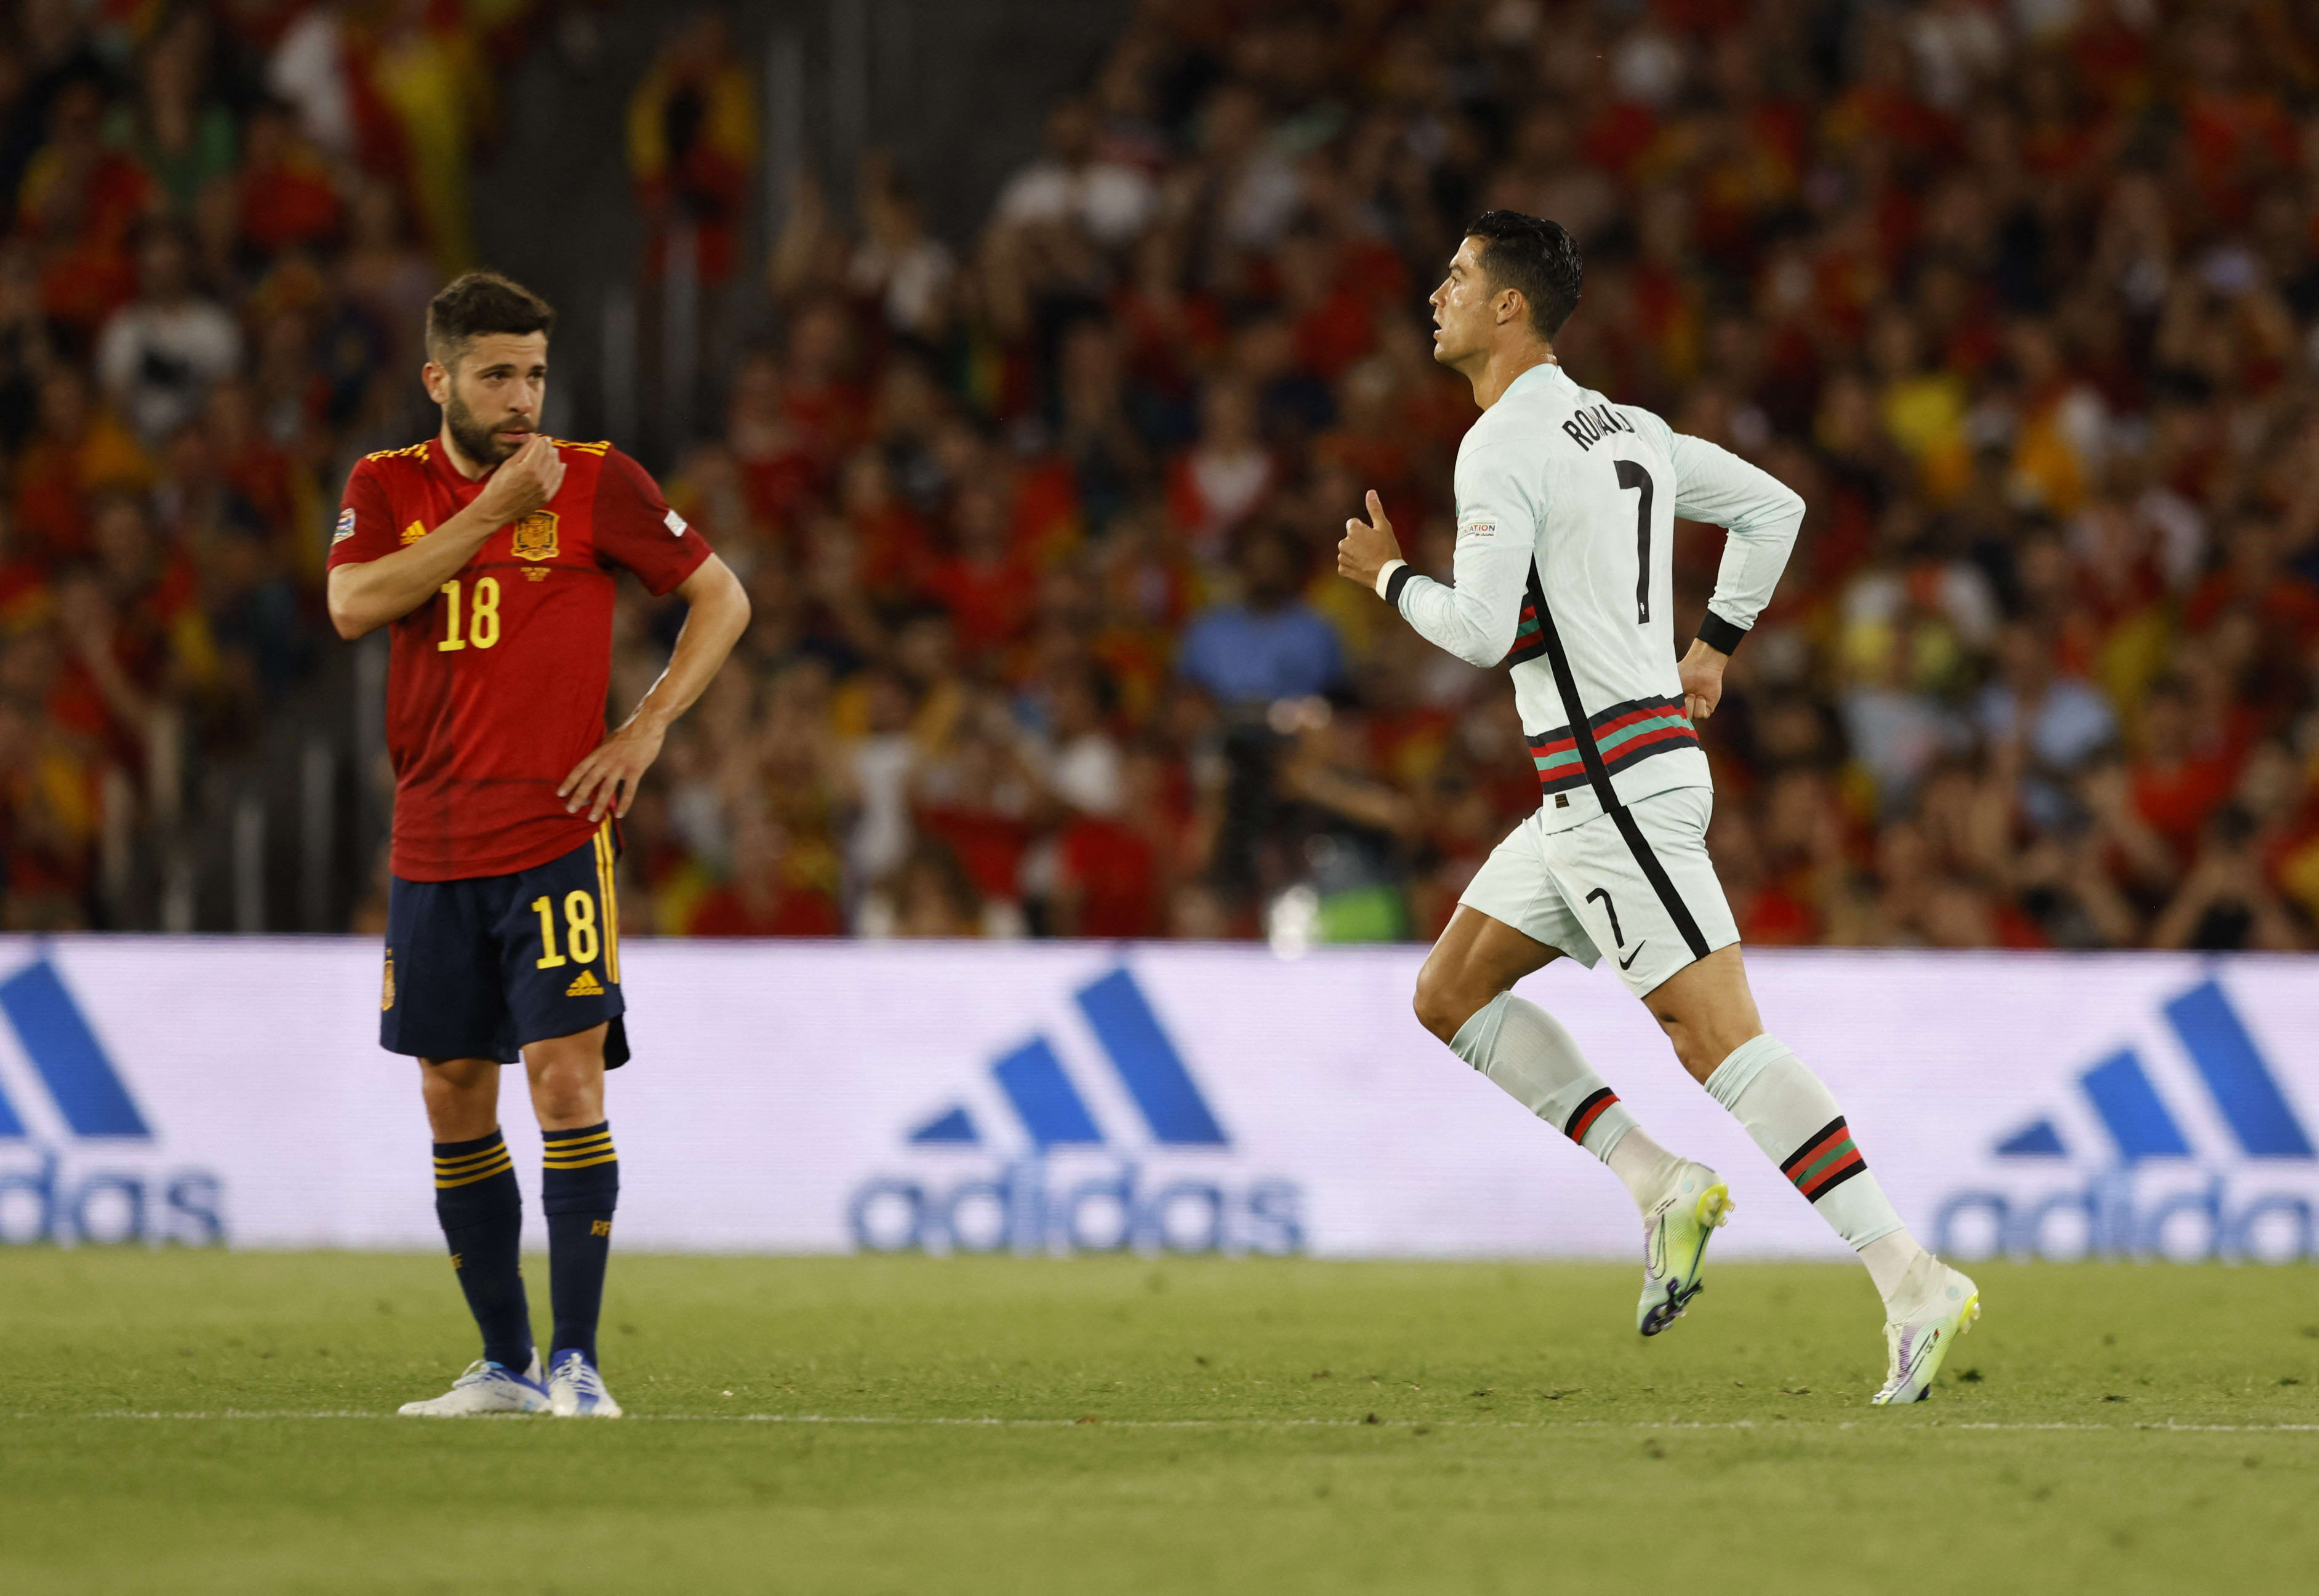 שחקן נבחרת פורטוגל כריסטיאנו רונאלדו מול שחקן נבחרת ספרד ג'ורדי אלבה